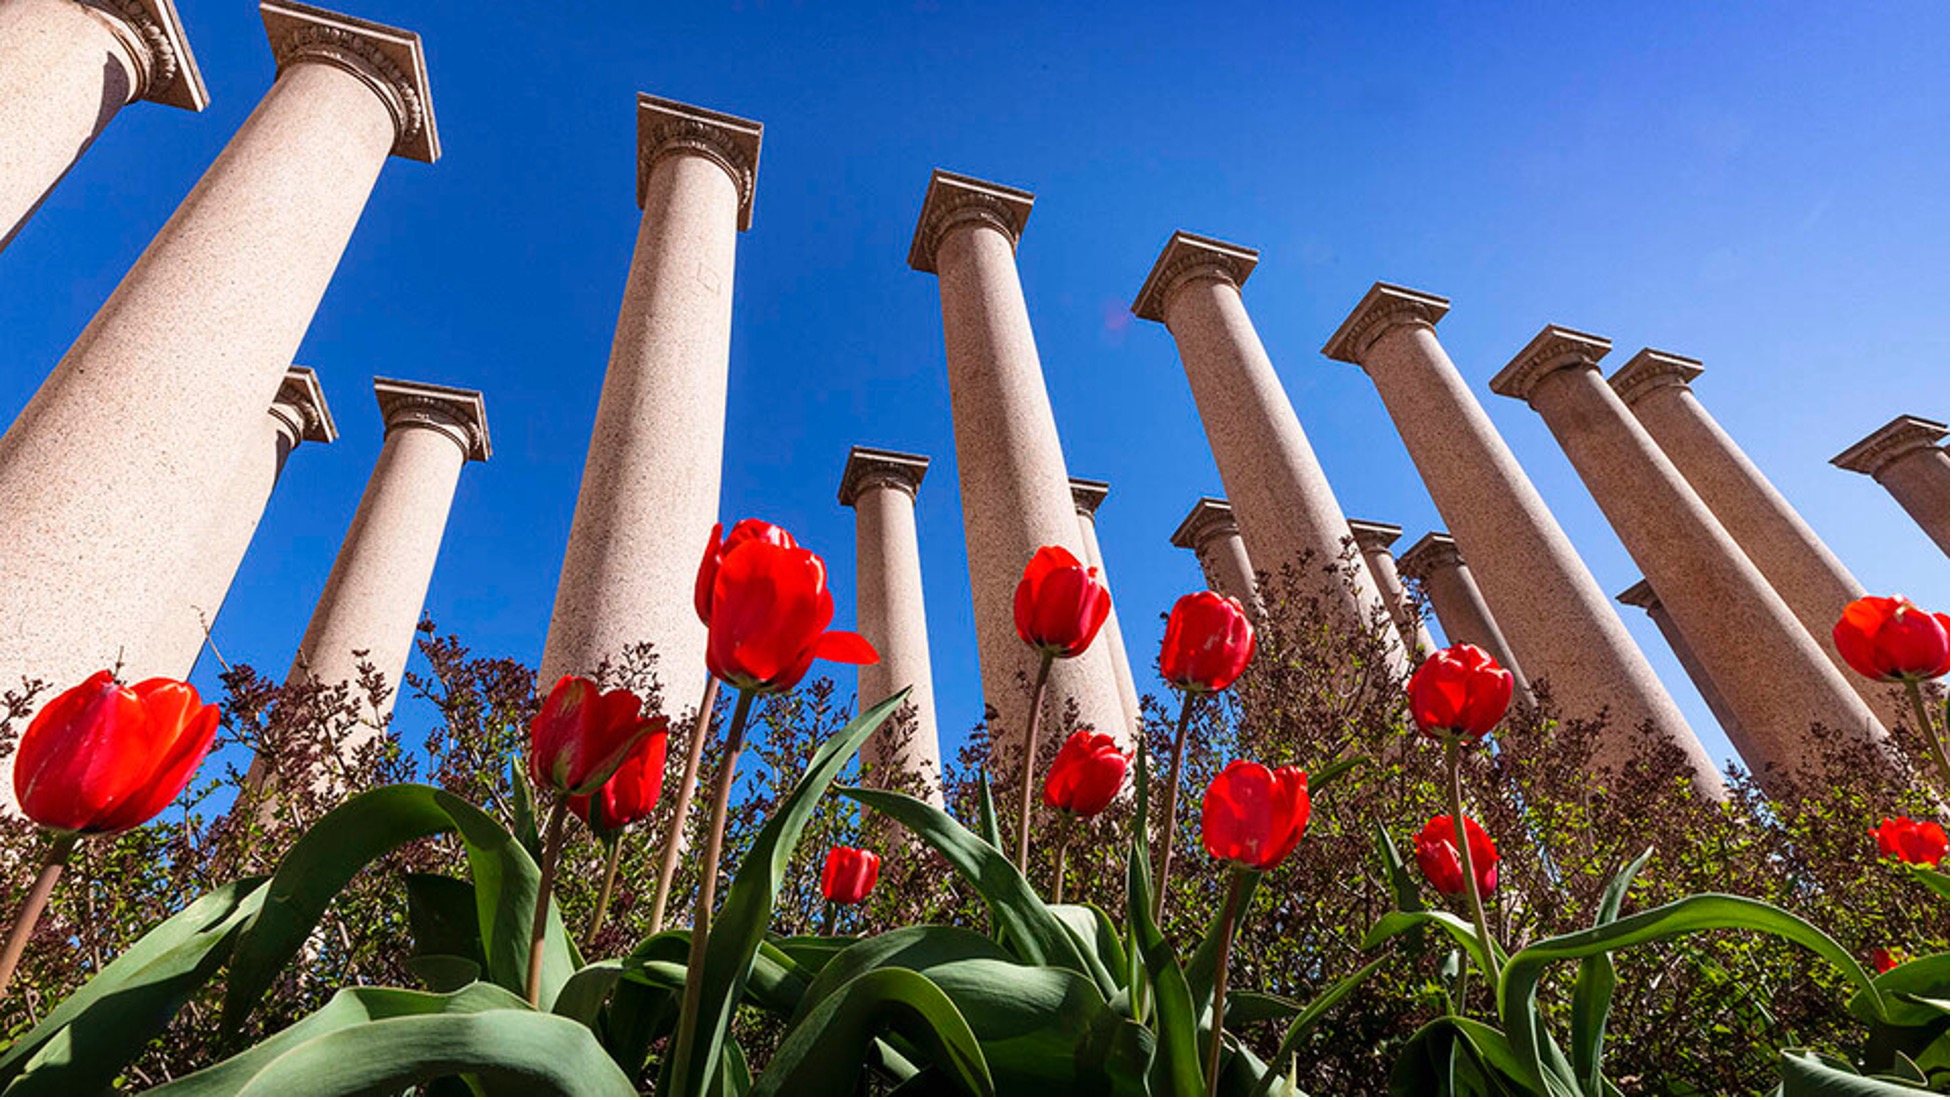 Columns at Nebraska campus.